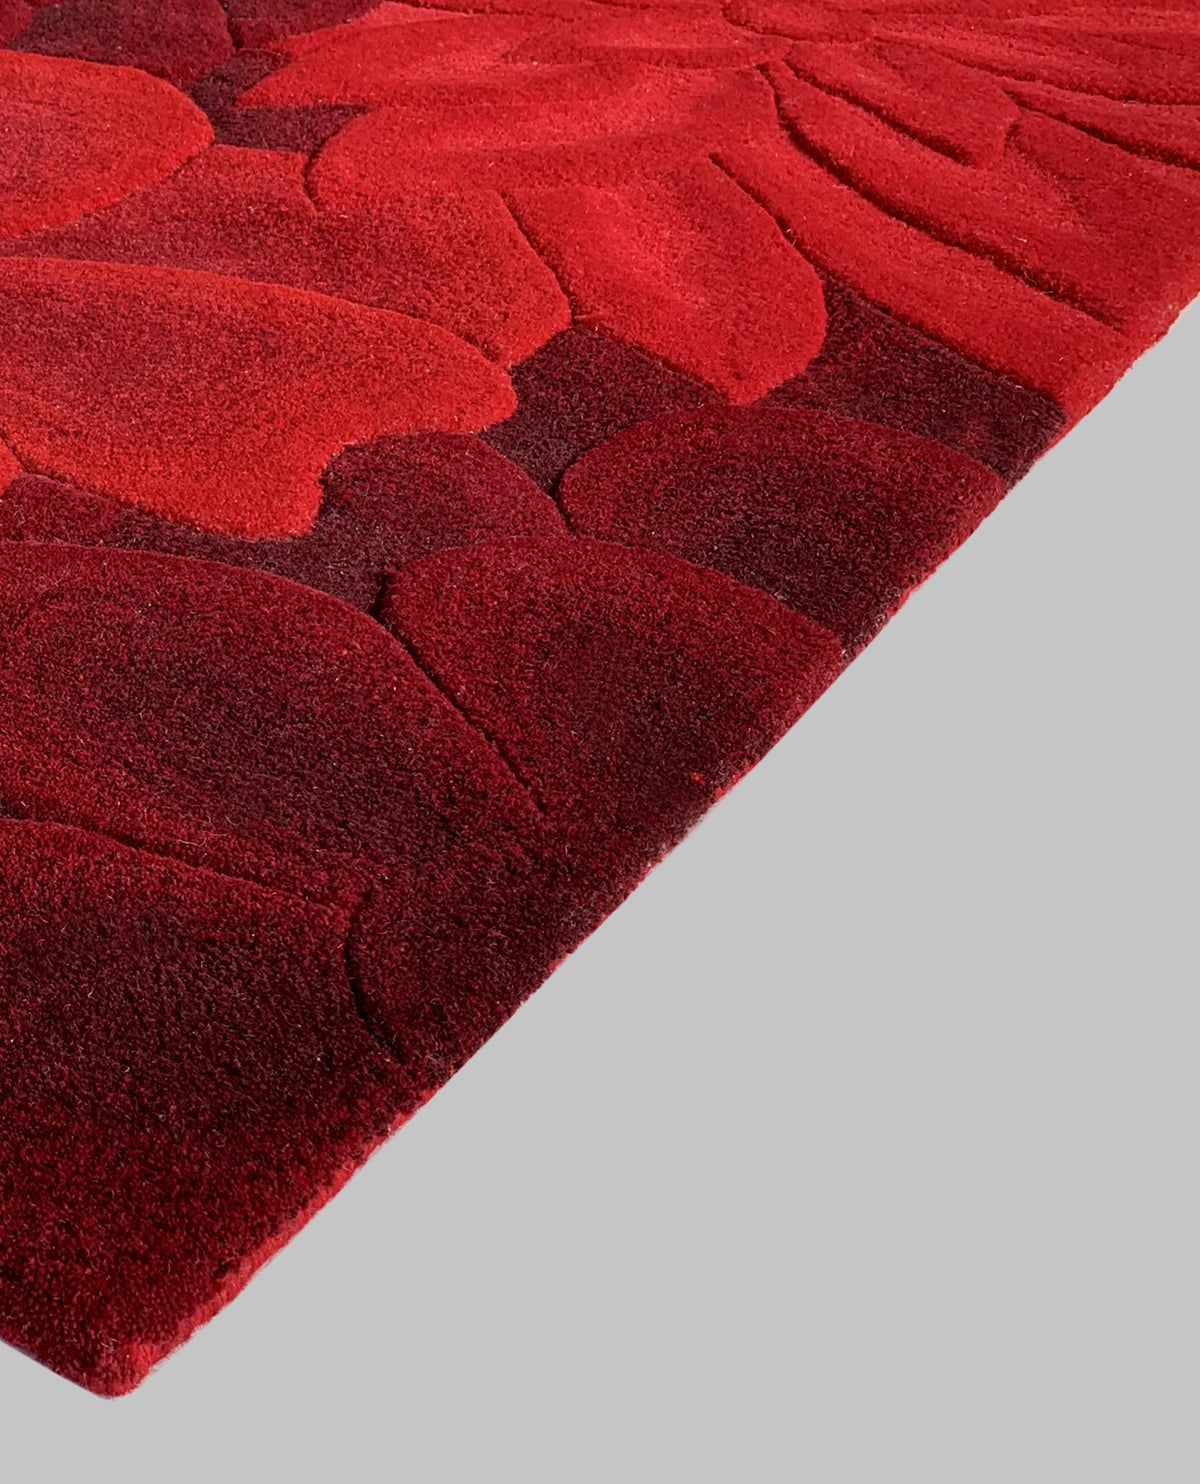 Rugslane Red Color Floral Design 100% New Zealand Wool Handmade Carpet 4.0ft X 5.6ft